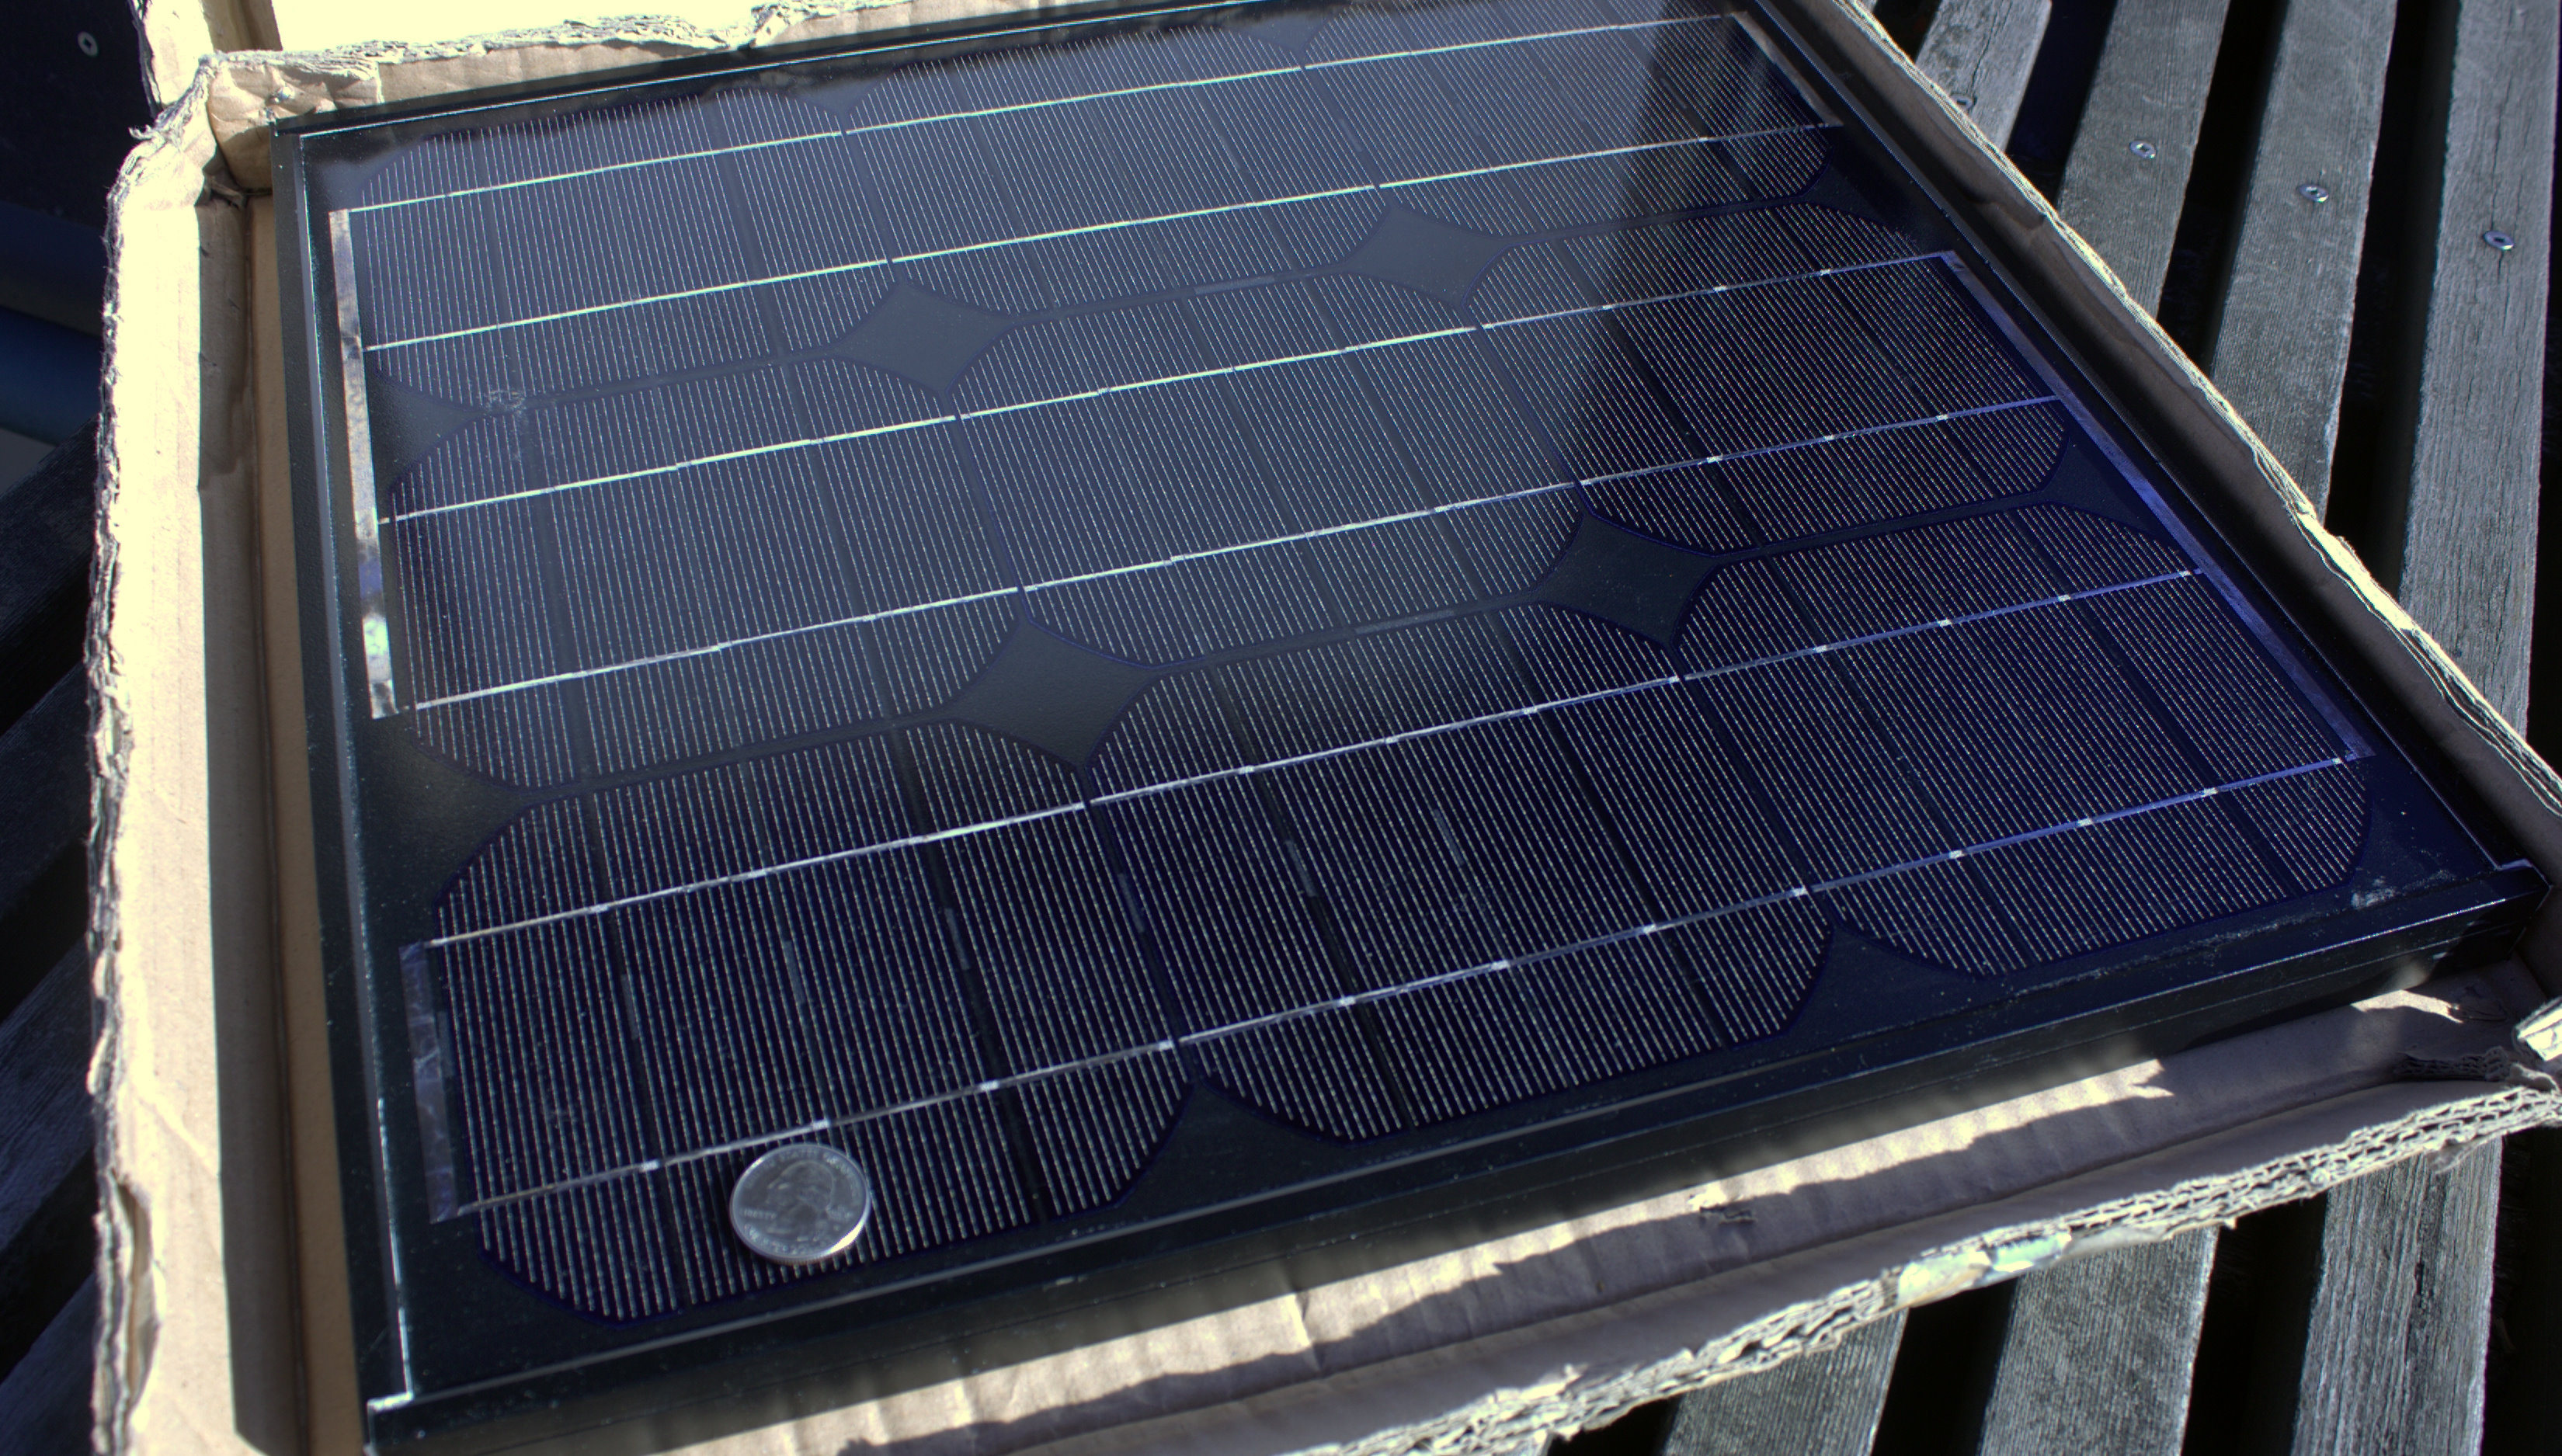 Un panneau solaire peut se faire avec du matériel de récupération. © Sam_churchill, Flickr, CC BY 2.0